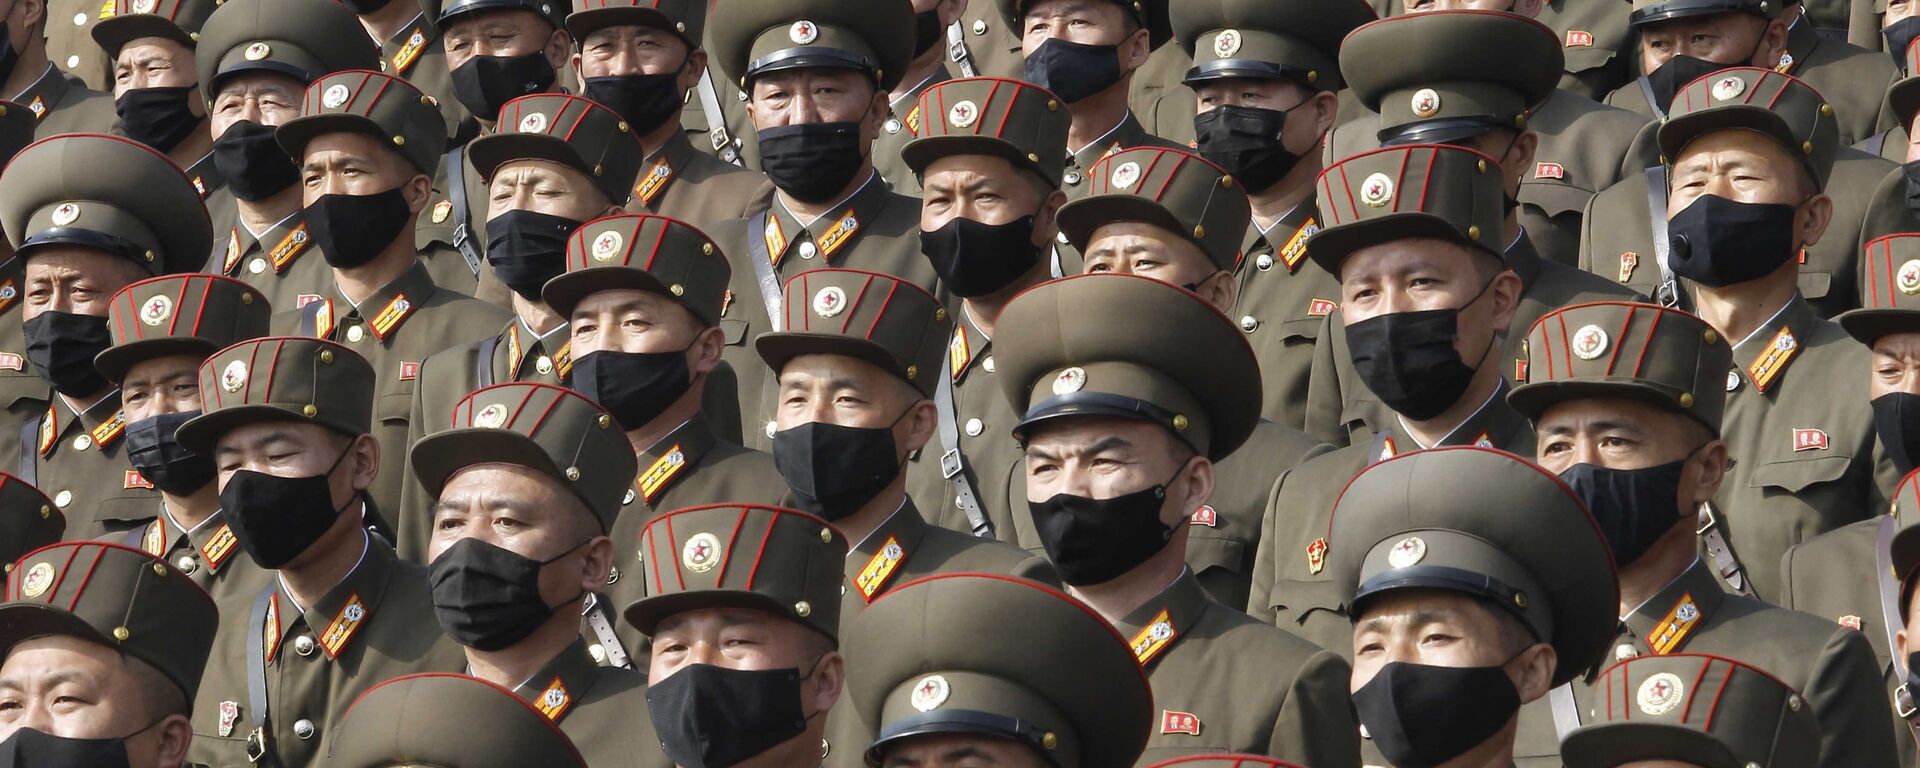 Многотысячный митинг в масках на площади Ким Ир Сена в Пхеньяне, посвященный началу 80-дневной кампании в поддержку предстоящего 8-го съезда Рабочей партии Кореи, который состоится в январе 2021 года, КНДР - Sputnik 日本, 1920, 30.03.2021